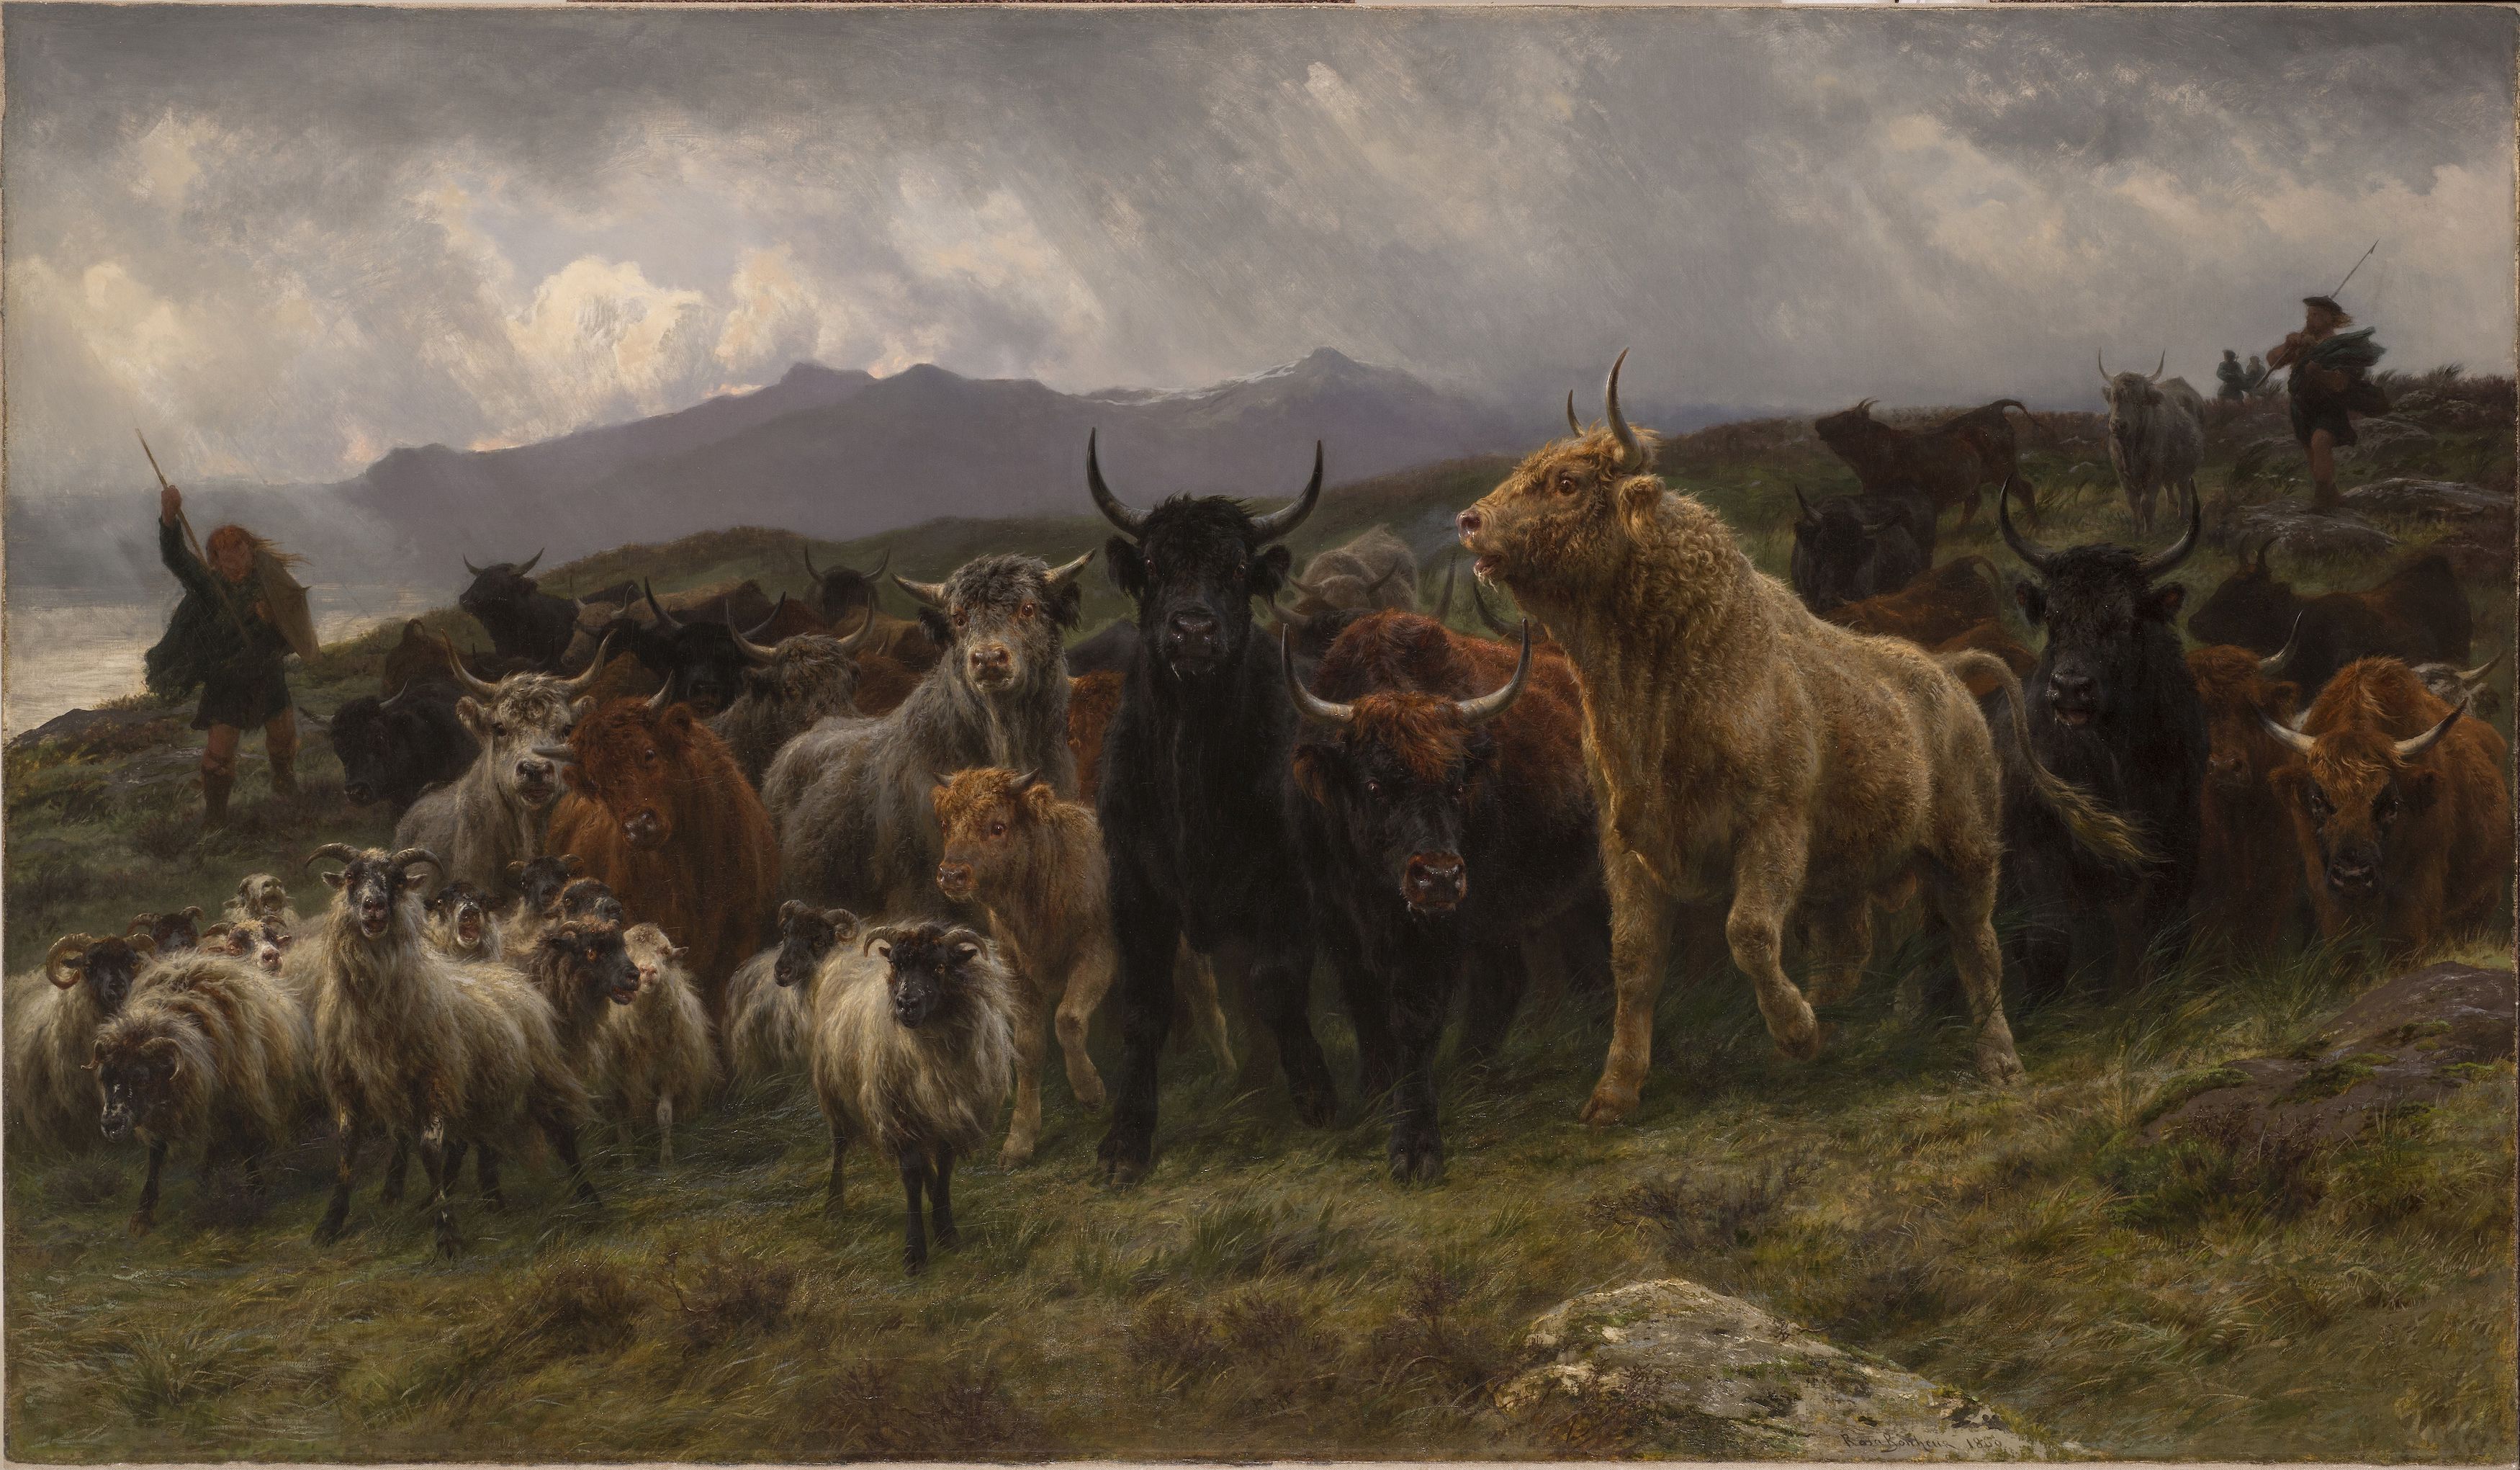 Caminho das Montanhas by Rosa Bonheur - 1860 - 129.5 x 213.3 cm 